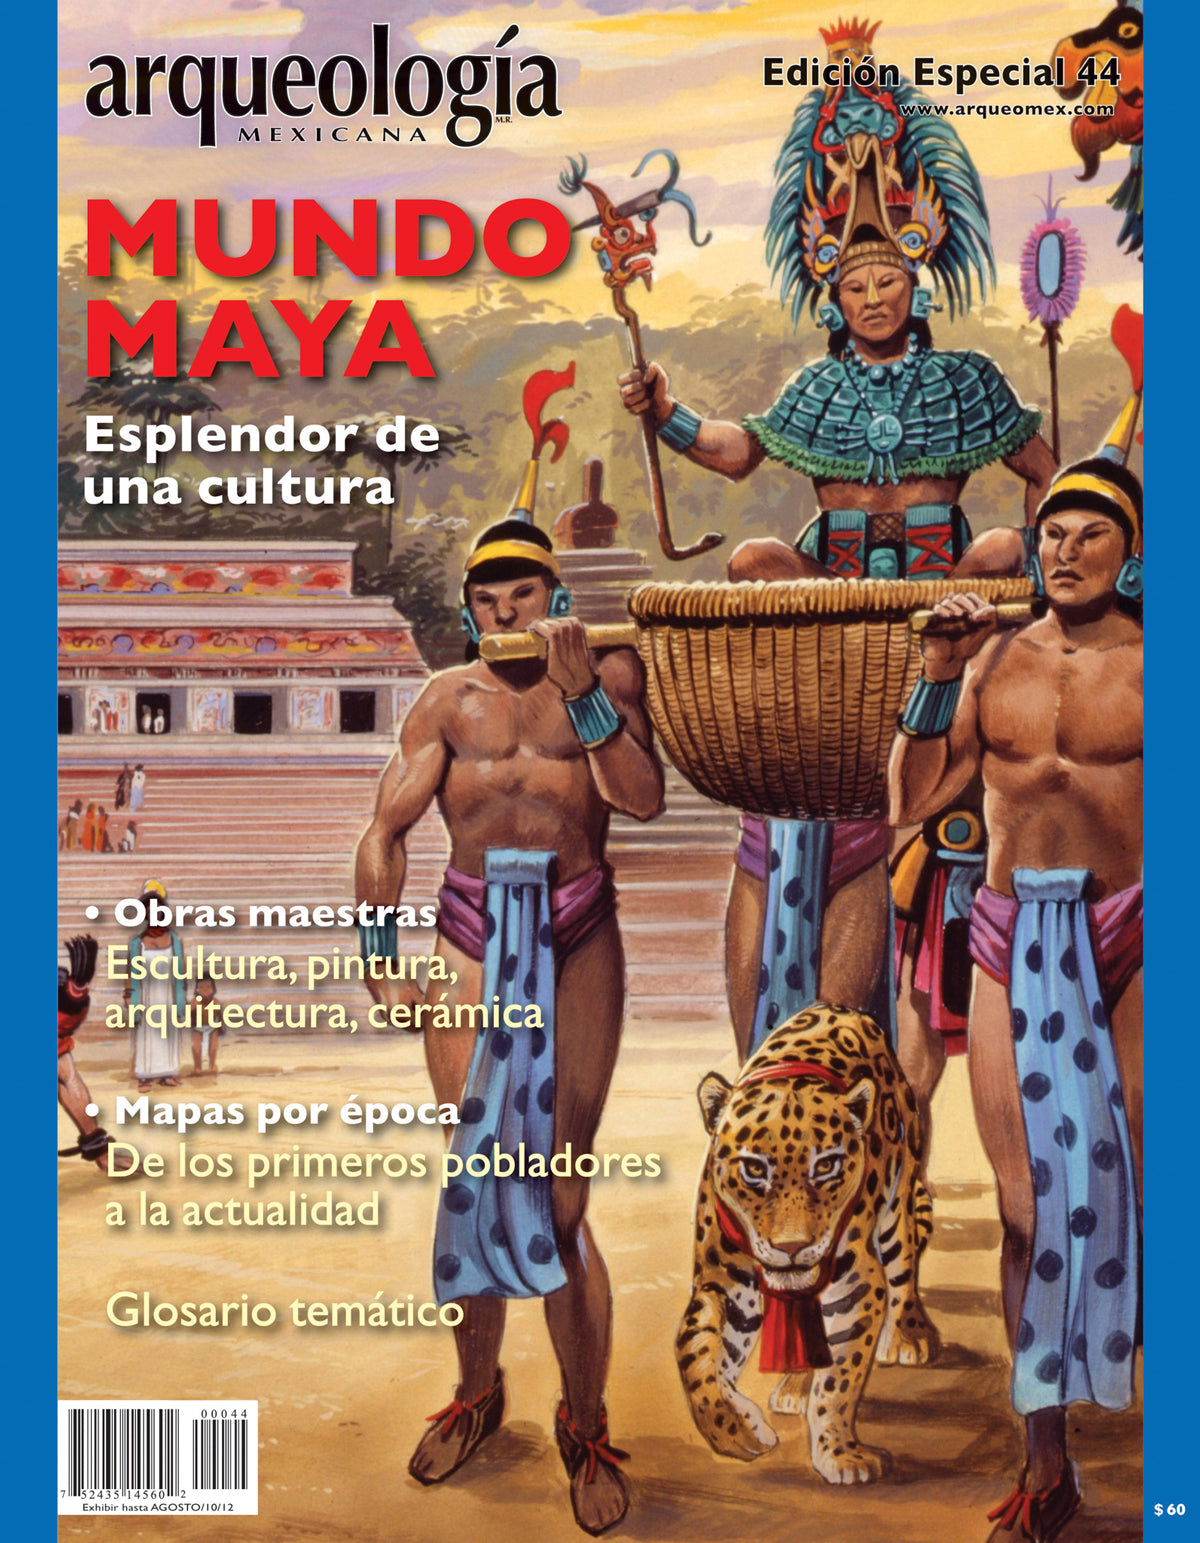 Mundo maya. Esplendor de una cultura